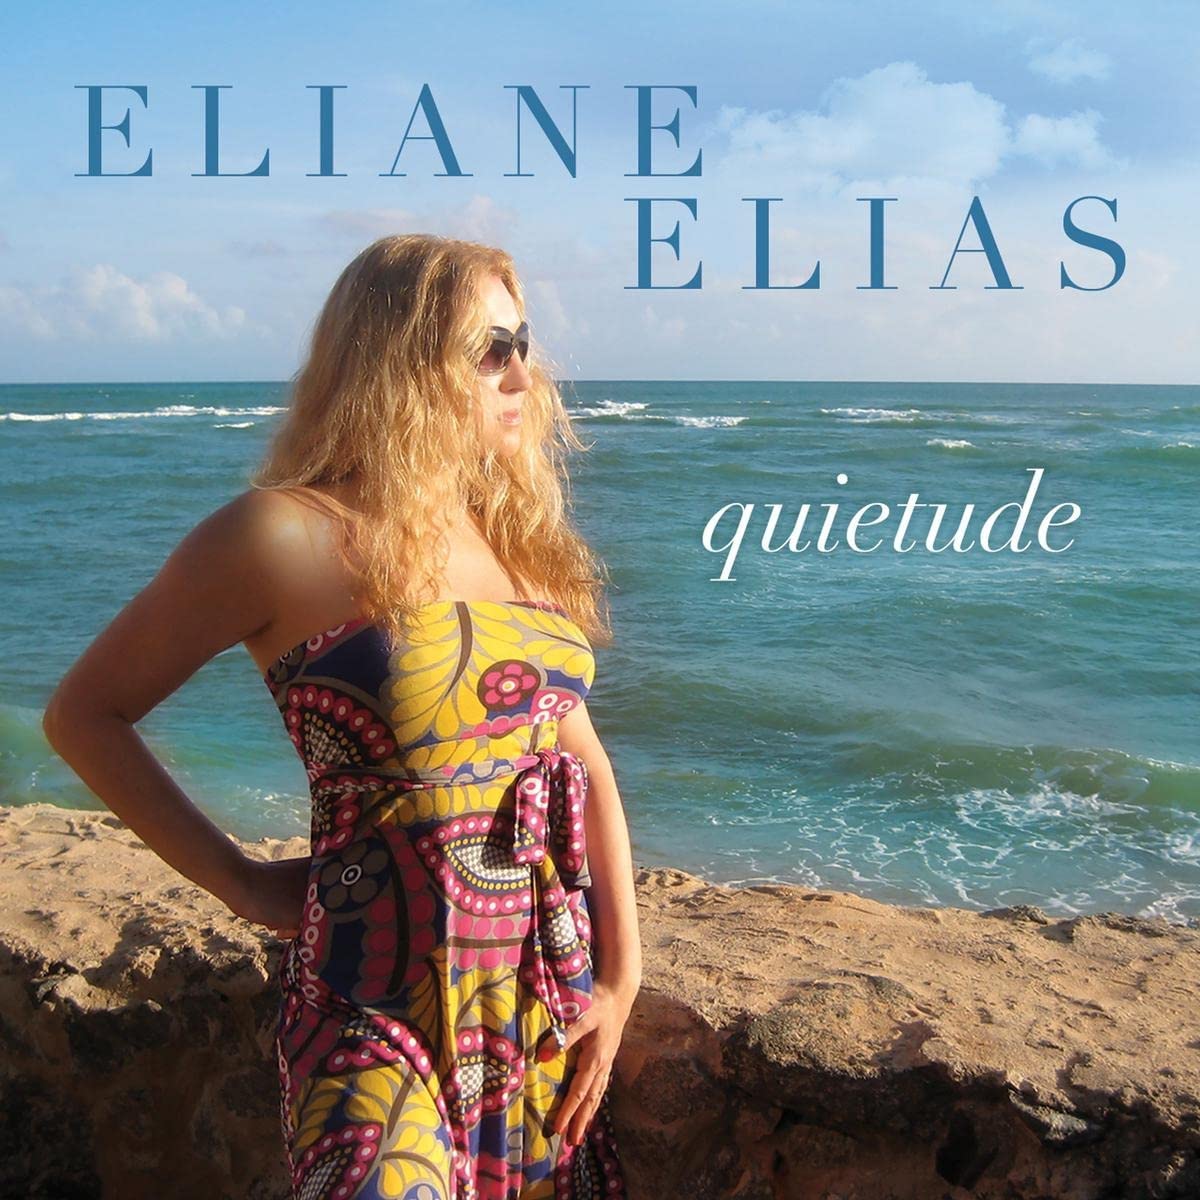 Eliane Elias - Quietude - CD